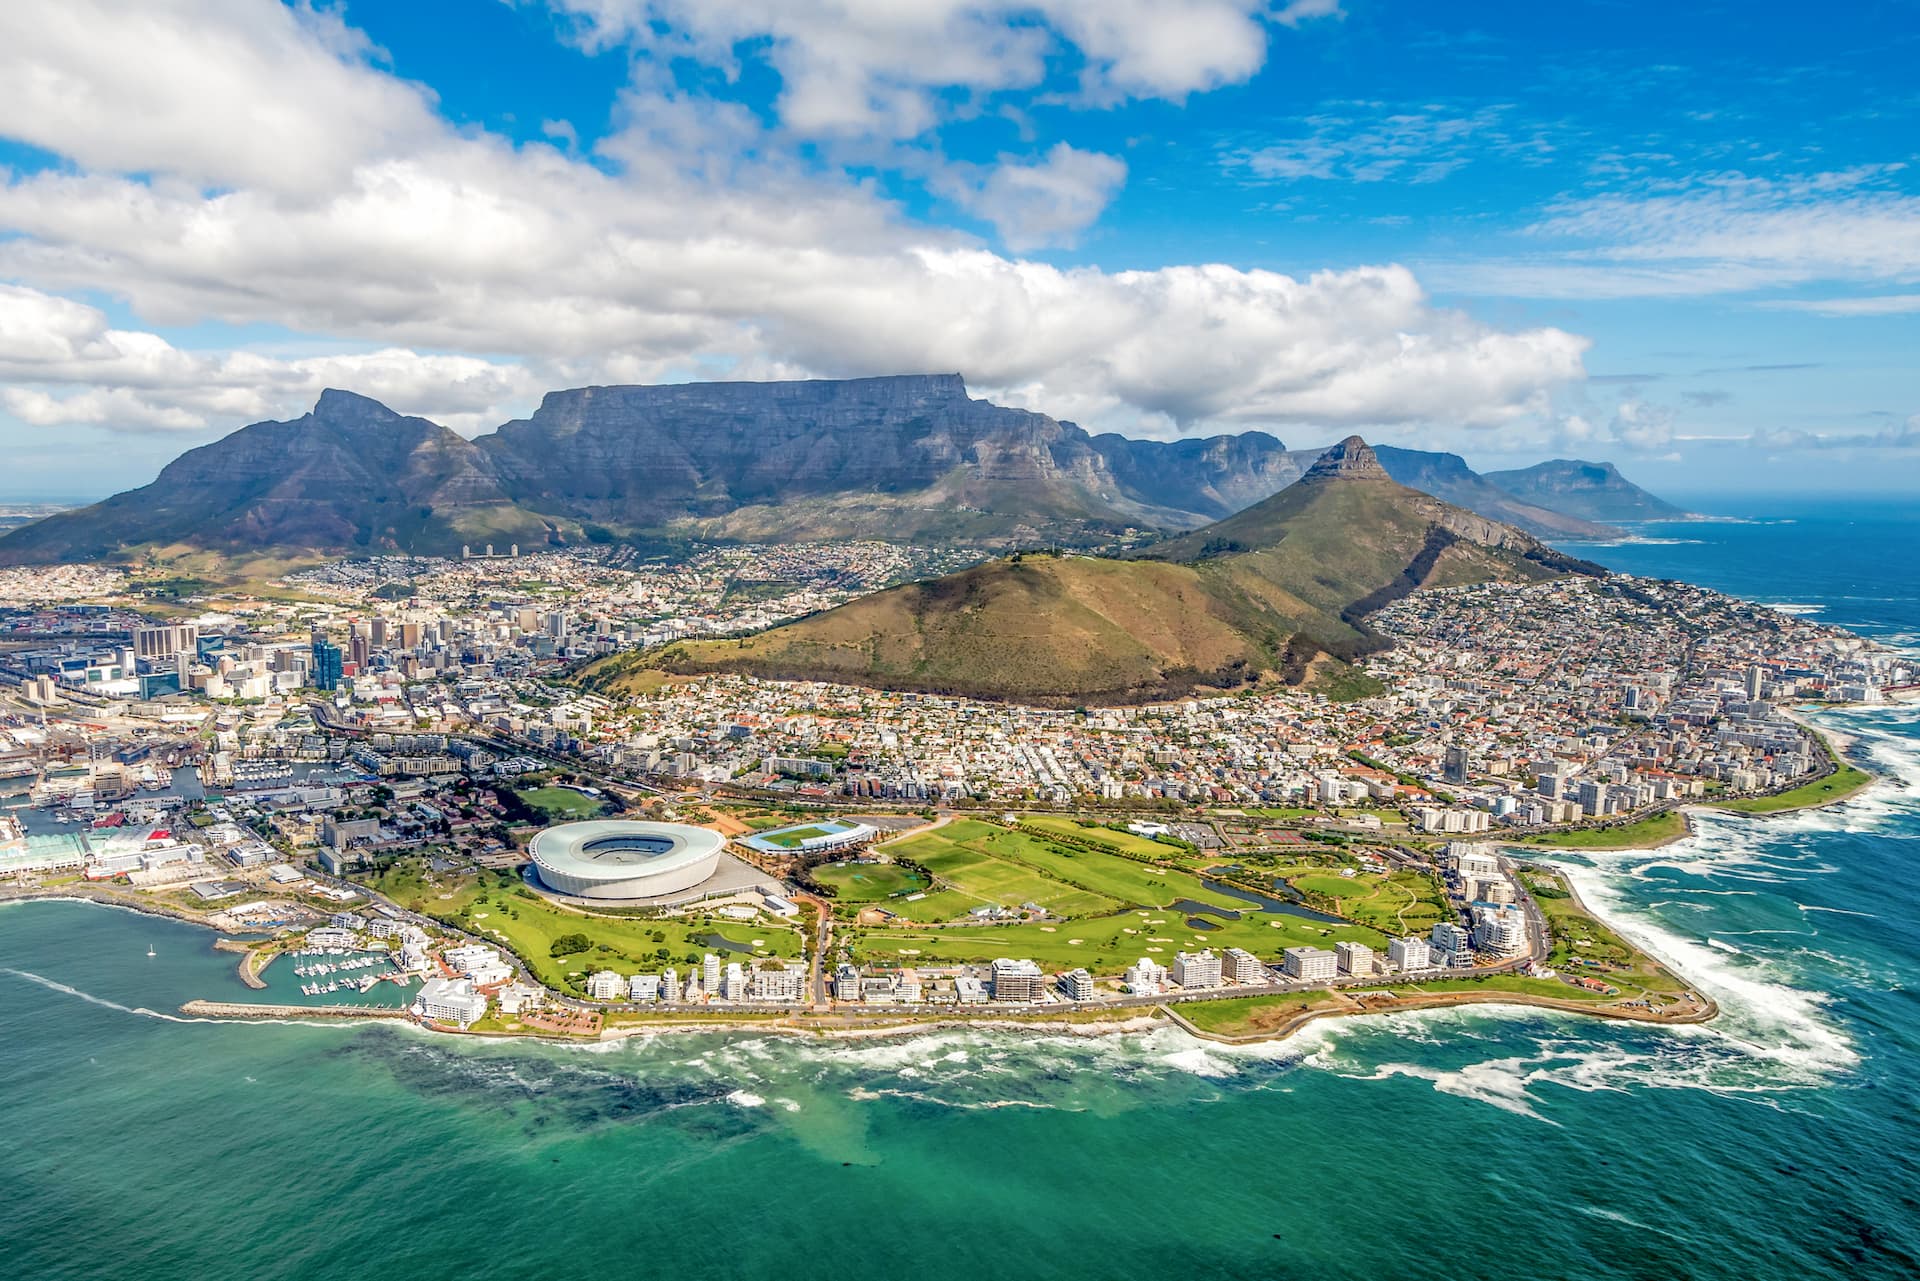 Nella foto una veduta area di Cape Town, capitale amministrativa del Sudafrica. Il paese è tristemente noto per detenere uno dei maggiori record in quanto a tasso di criminalità (Foto: Ben1183 - iStock)